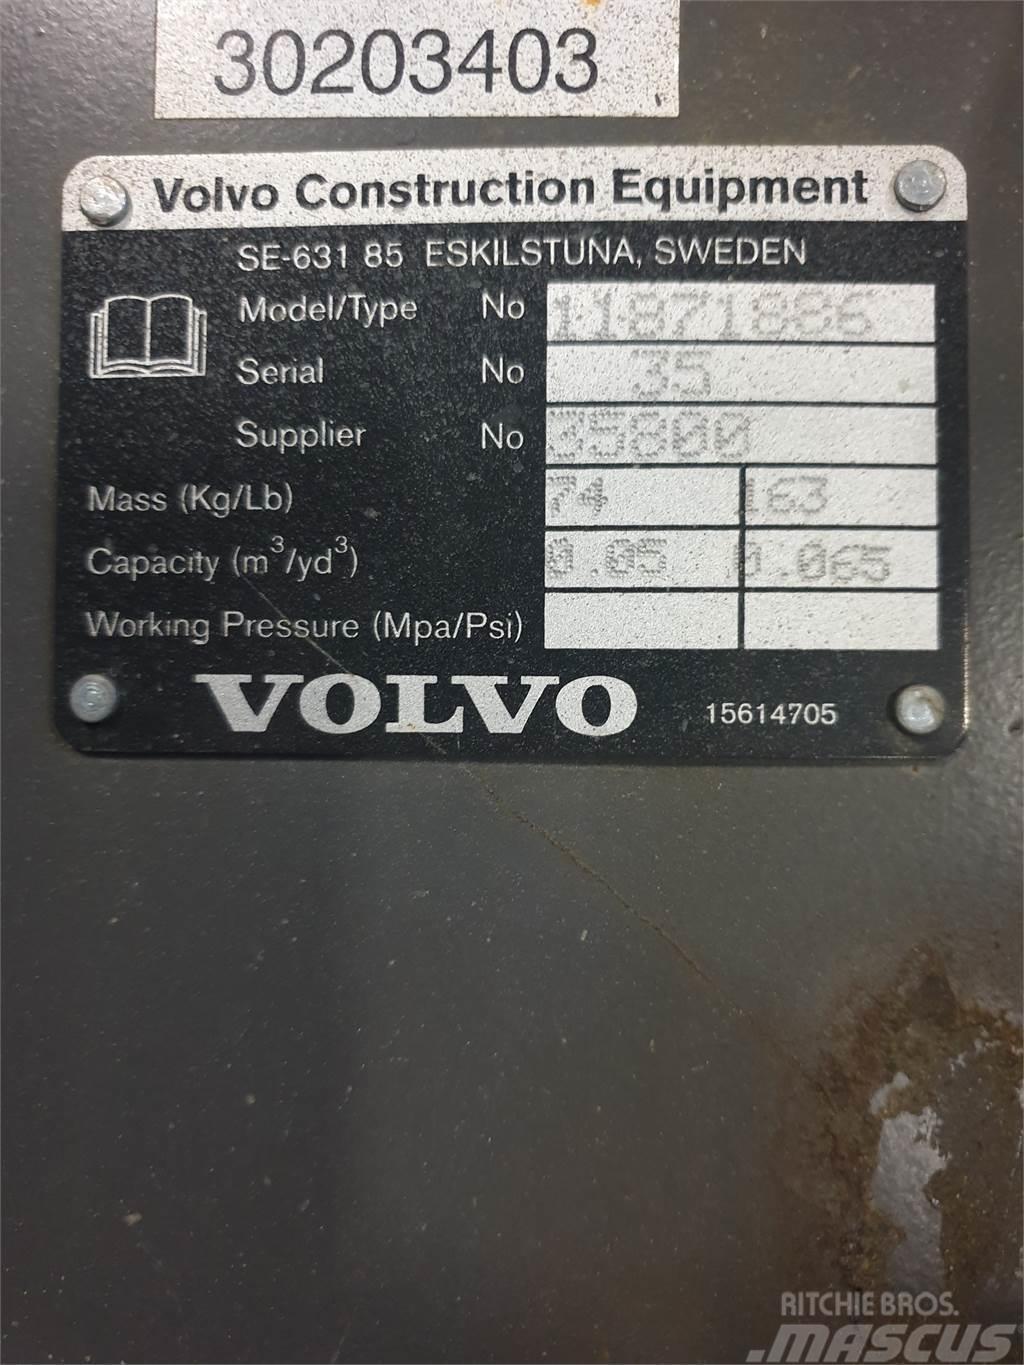 Volvo Kabelskopa S40 300mm Skovle